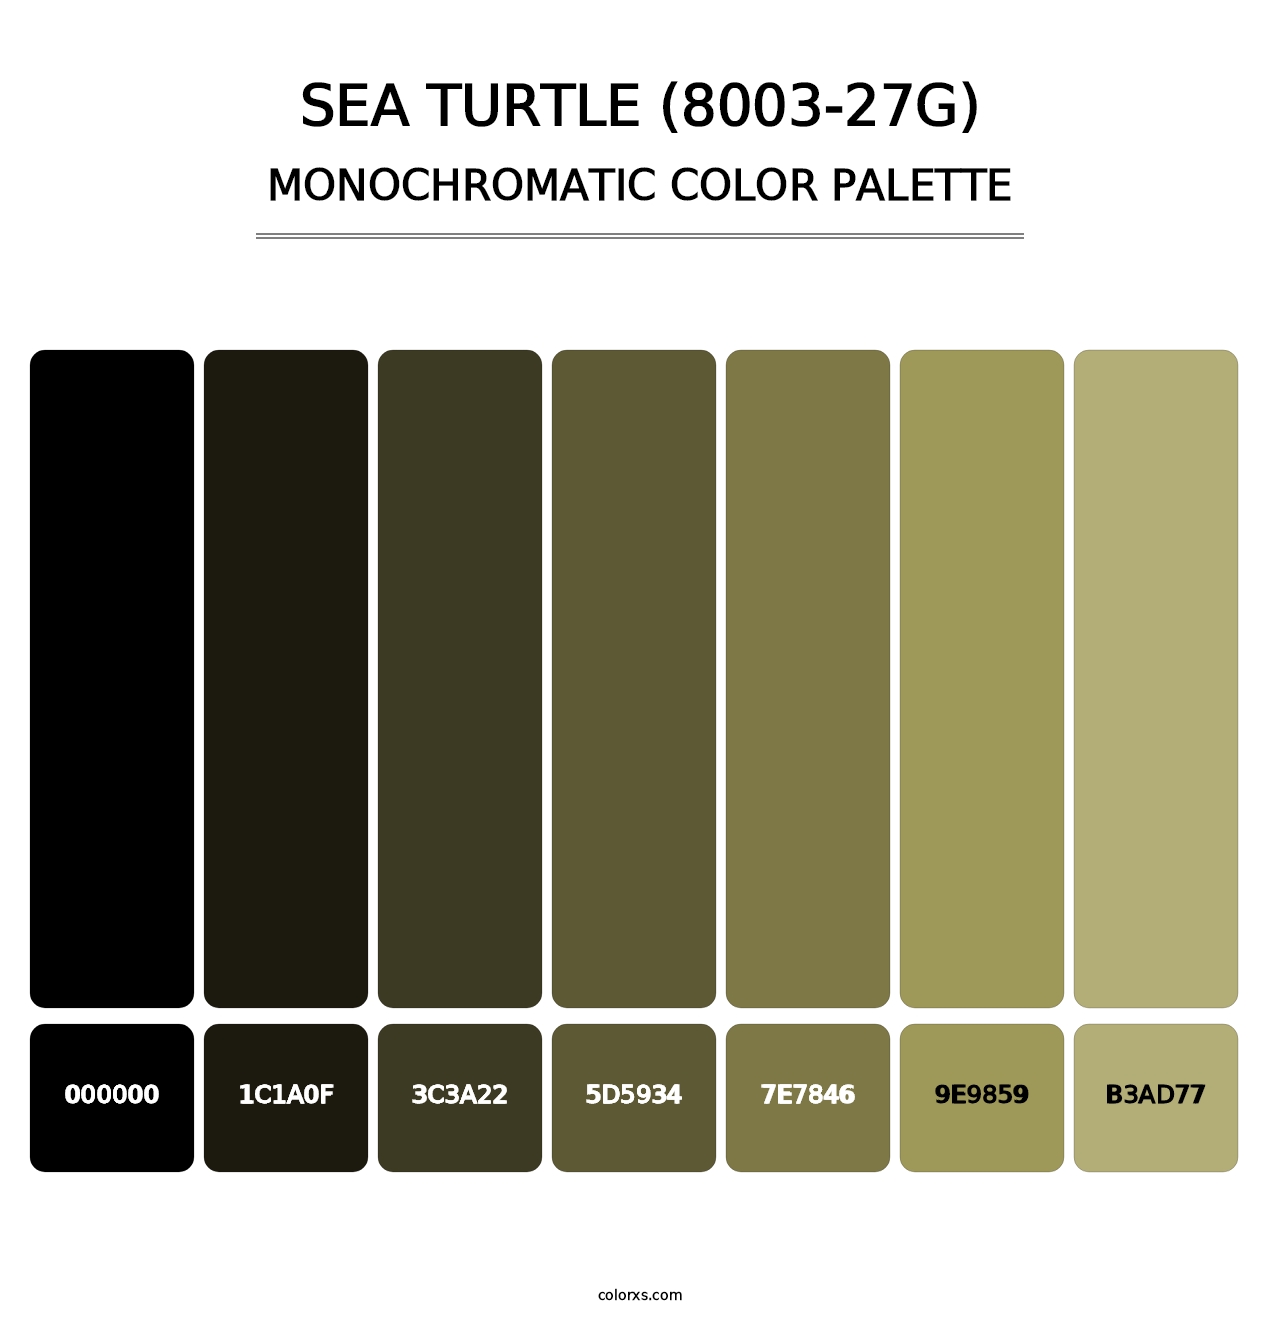 Sea Turtle (8003-27G) - Monochromatic Color Palette